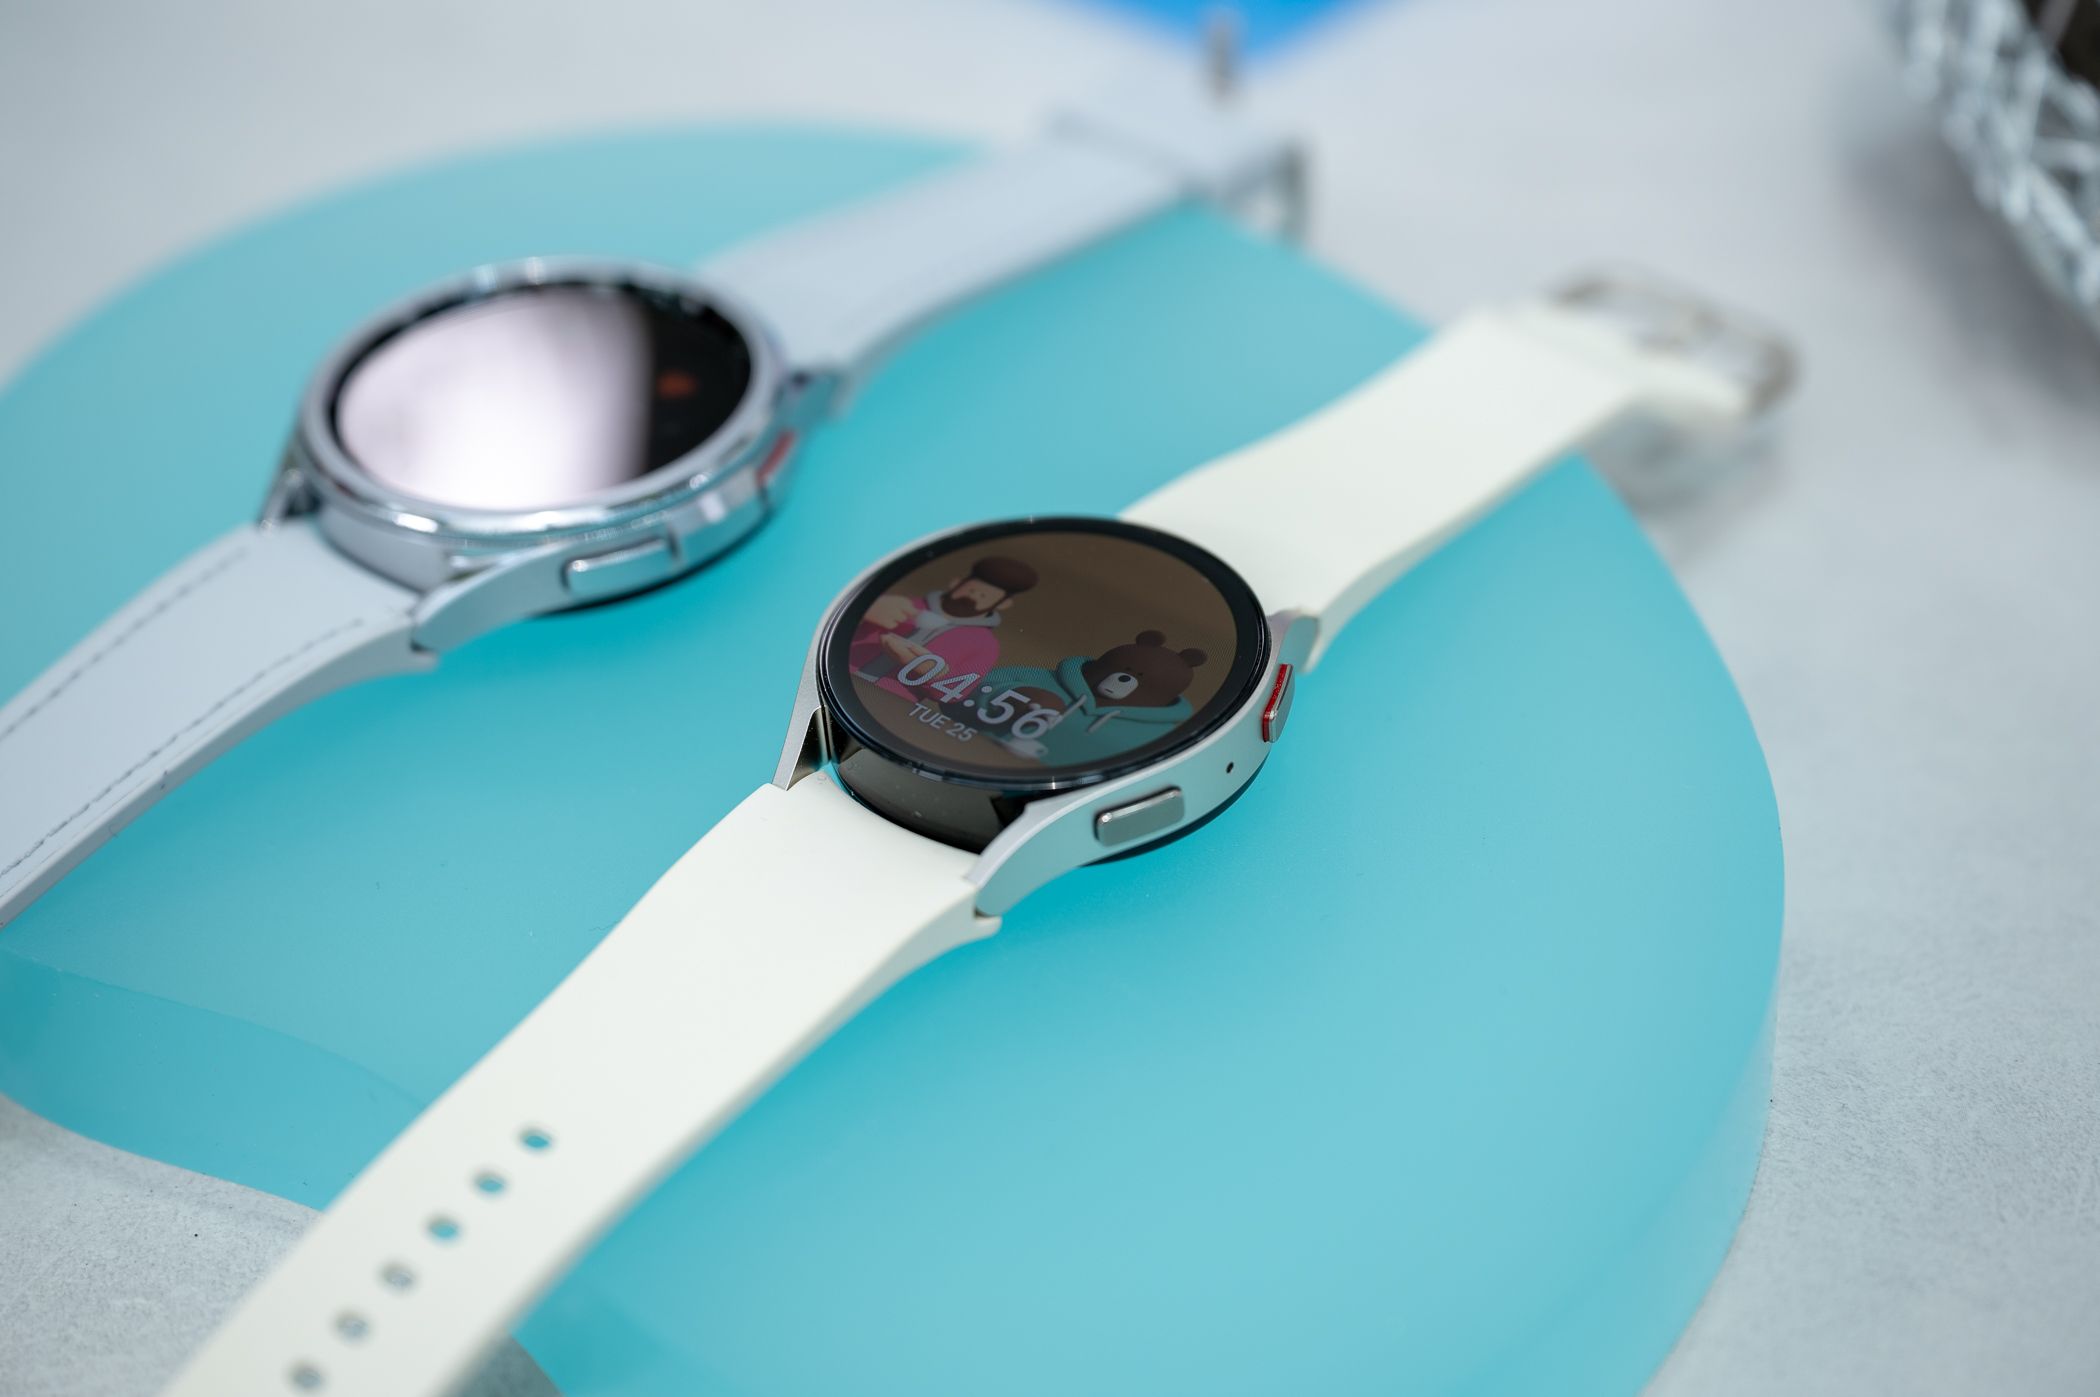 Samsung obtient l'approbation de la FDA pour la détection de l'apnée du sommeil sur la Galaxy Watch